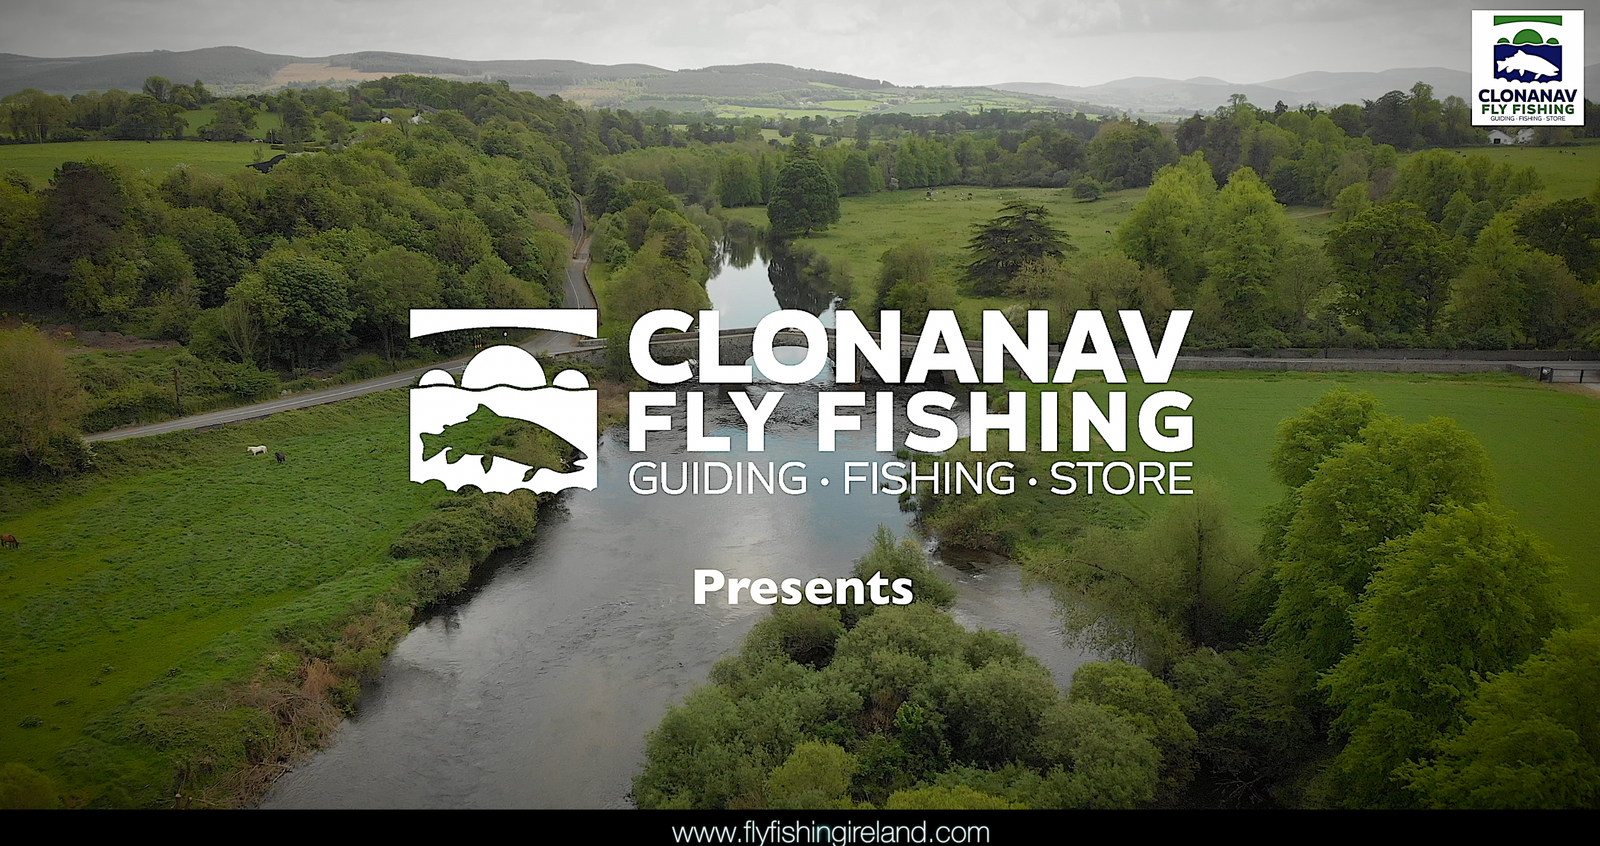 Hardy 150th Anniversary at Clonanav Fly Fishing